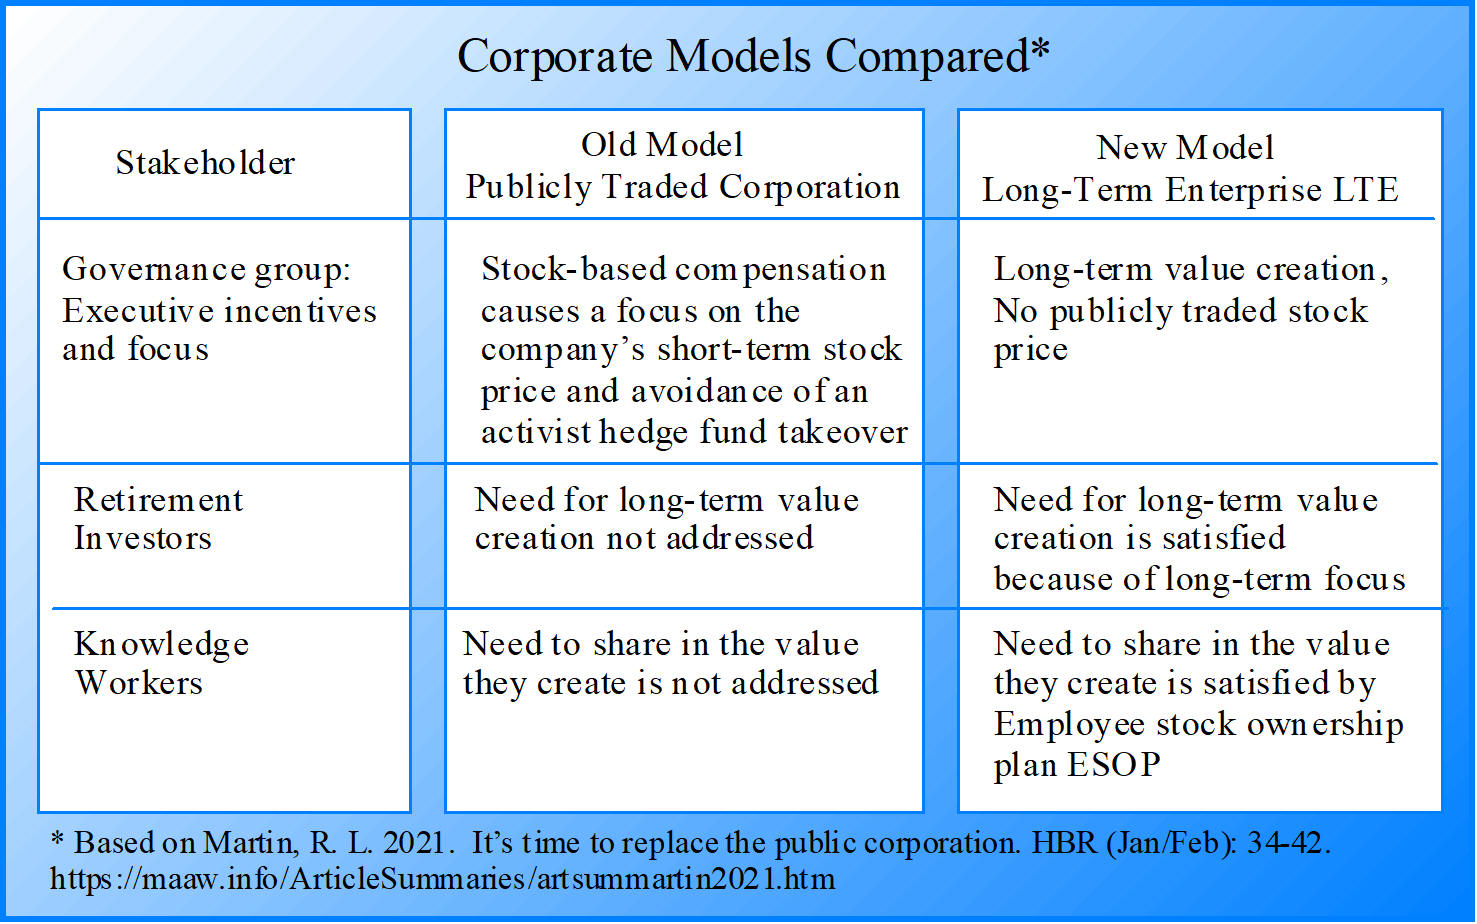 Public Corporation comparied to a Long-term Enterprise